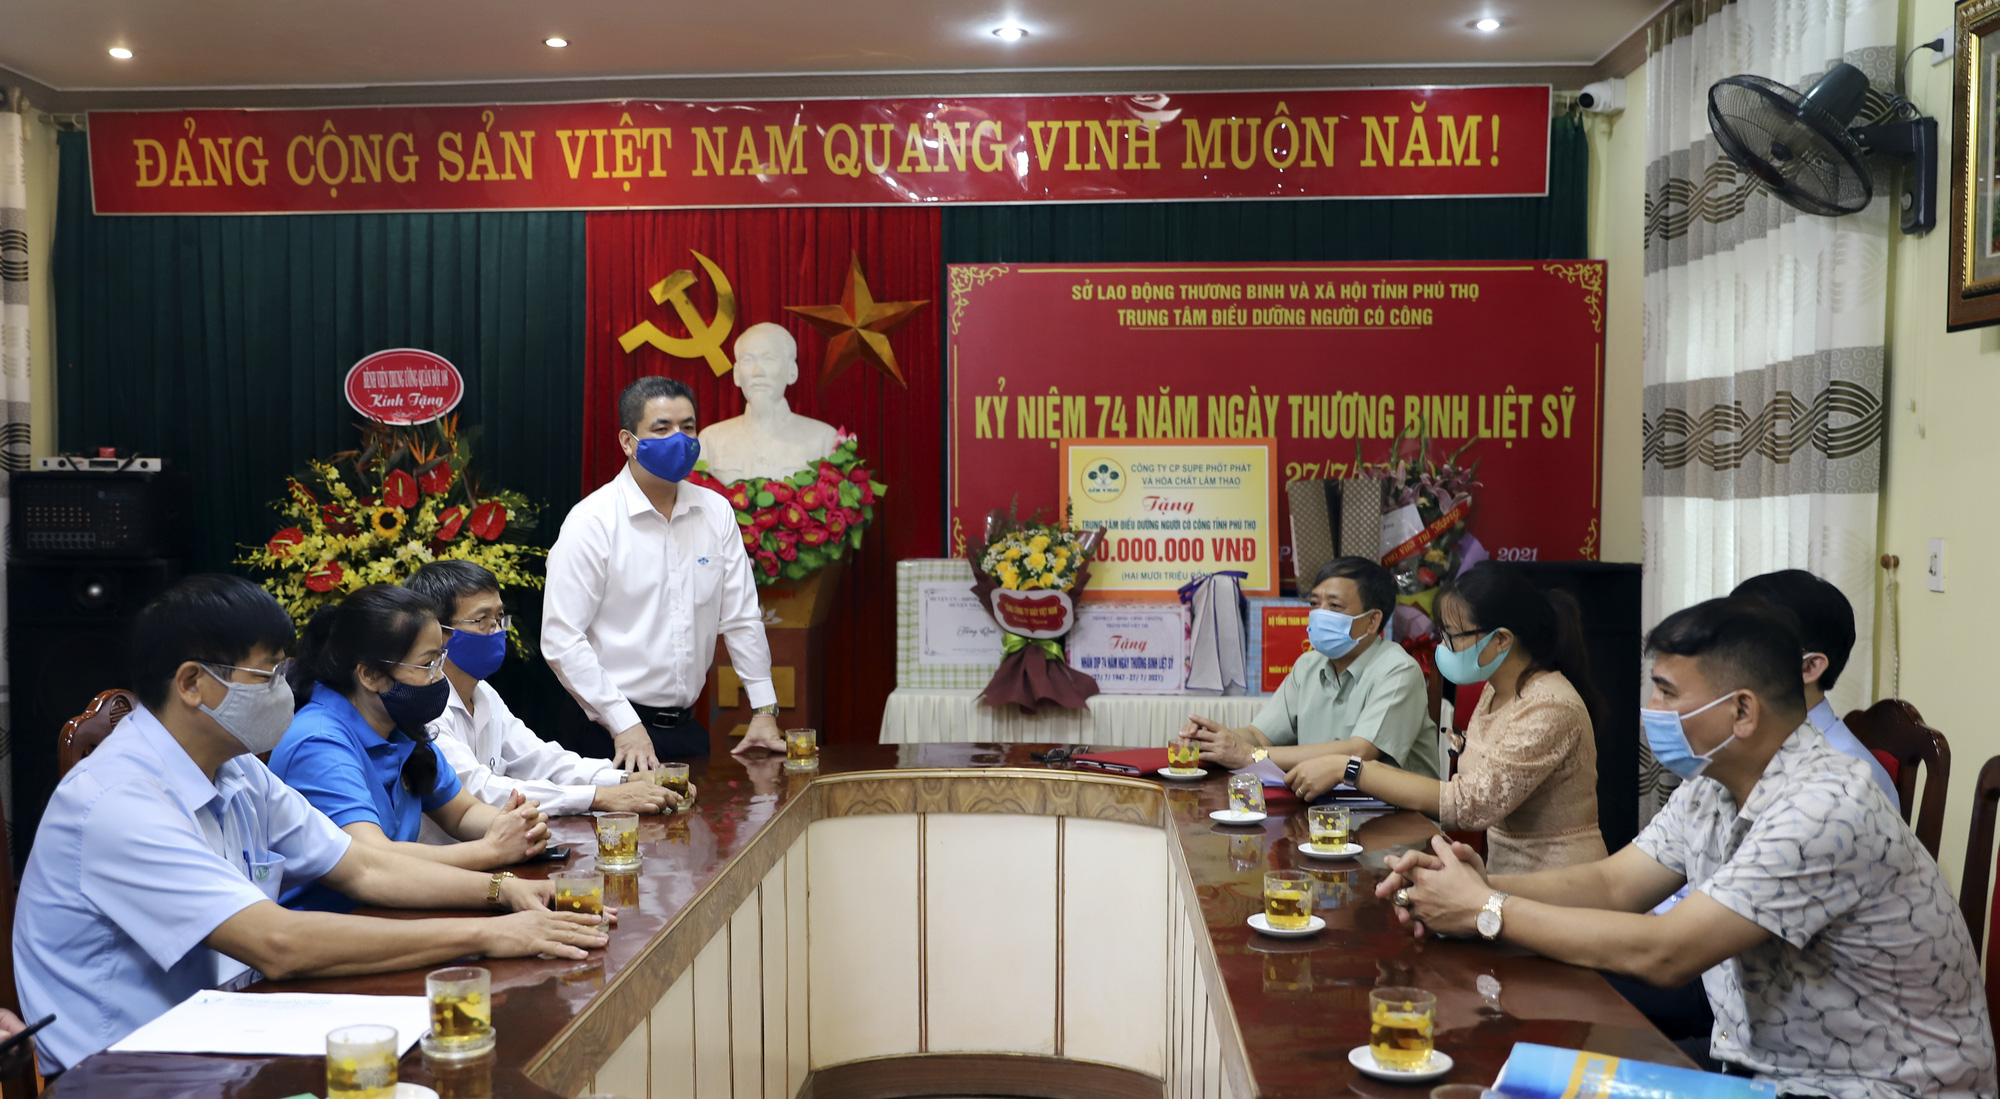 Supe Lâm Thao thăm, tặng quà Trung tâm Điều dưỡng người có công tỉnh Phú Thọ - Ảnh 1.